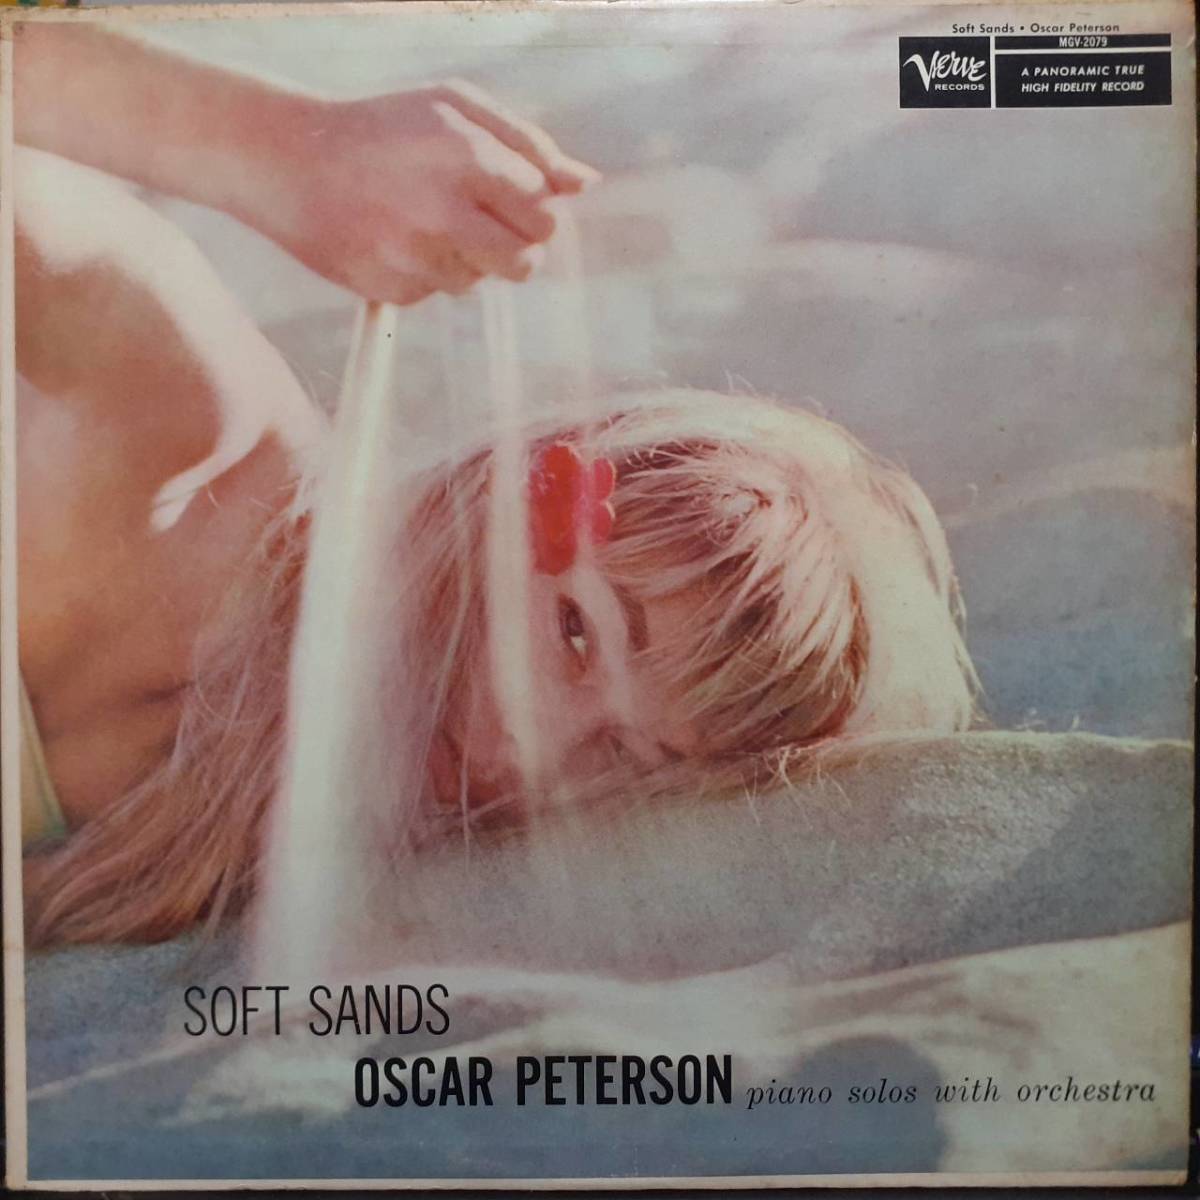 ... пластинка   вокальный   4 мелодия  ...VERVE пластинка LP  черный   серебро T этикетка MONO！Oscar Peterson / Soft Sands 1957 год ...   60  год выпуска ... V-2079 ... машина  *  ...